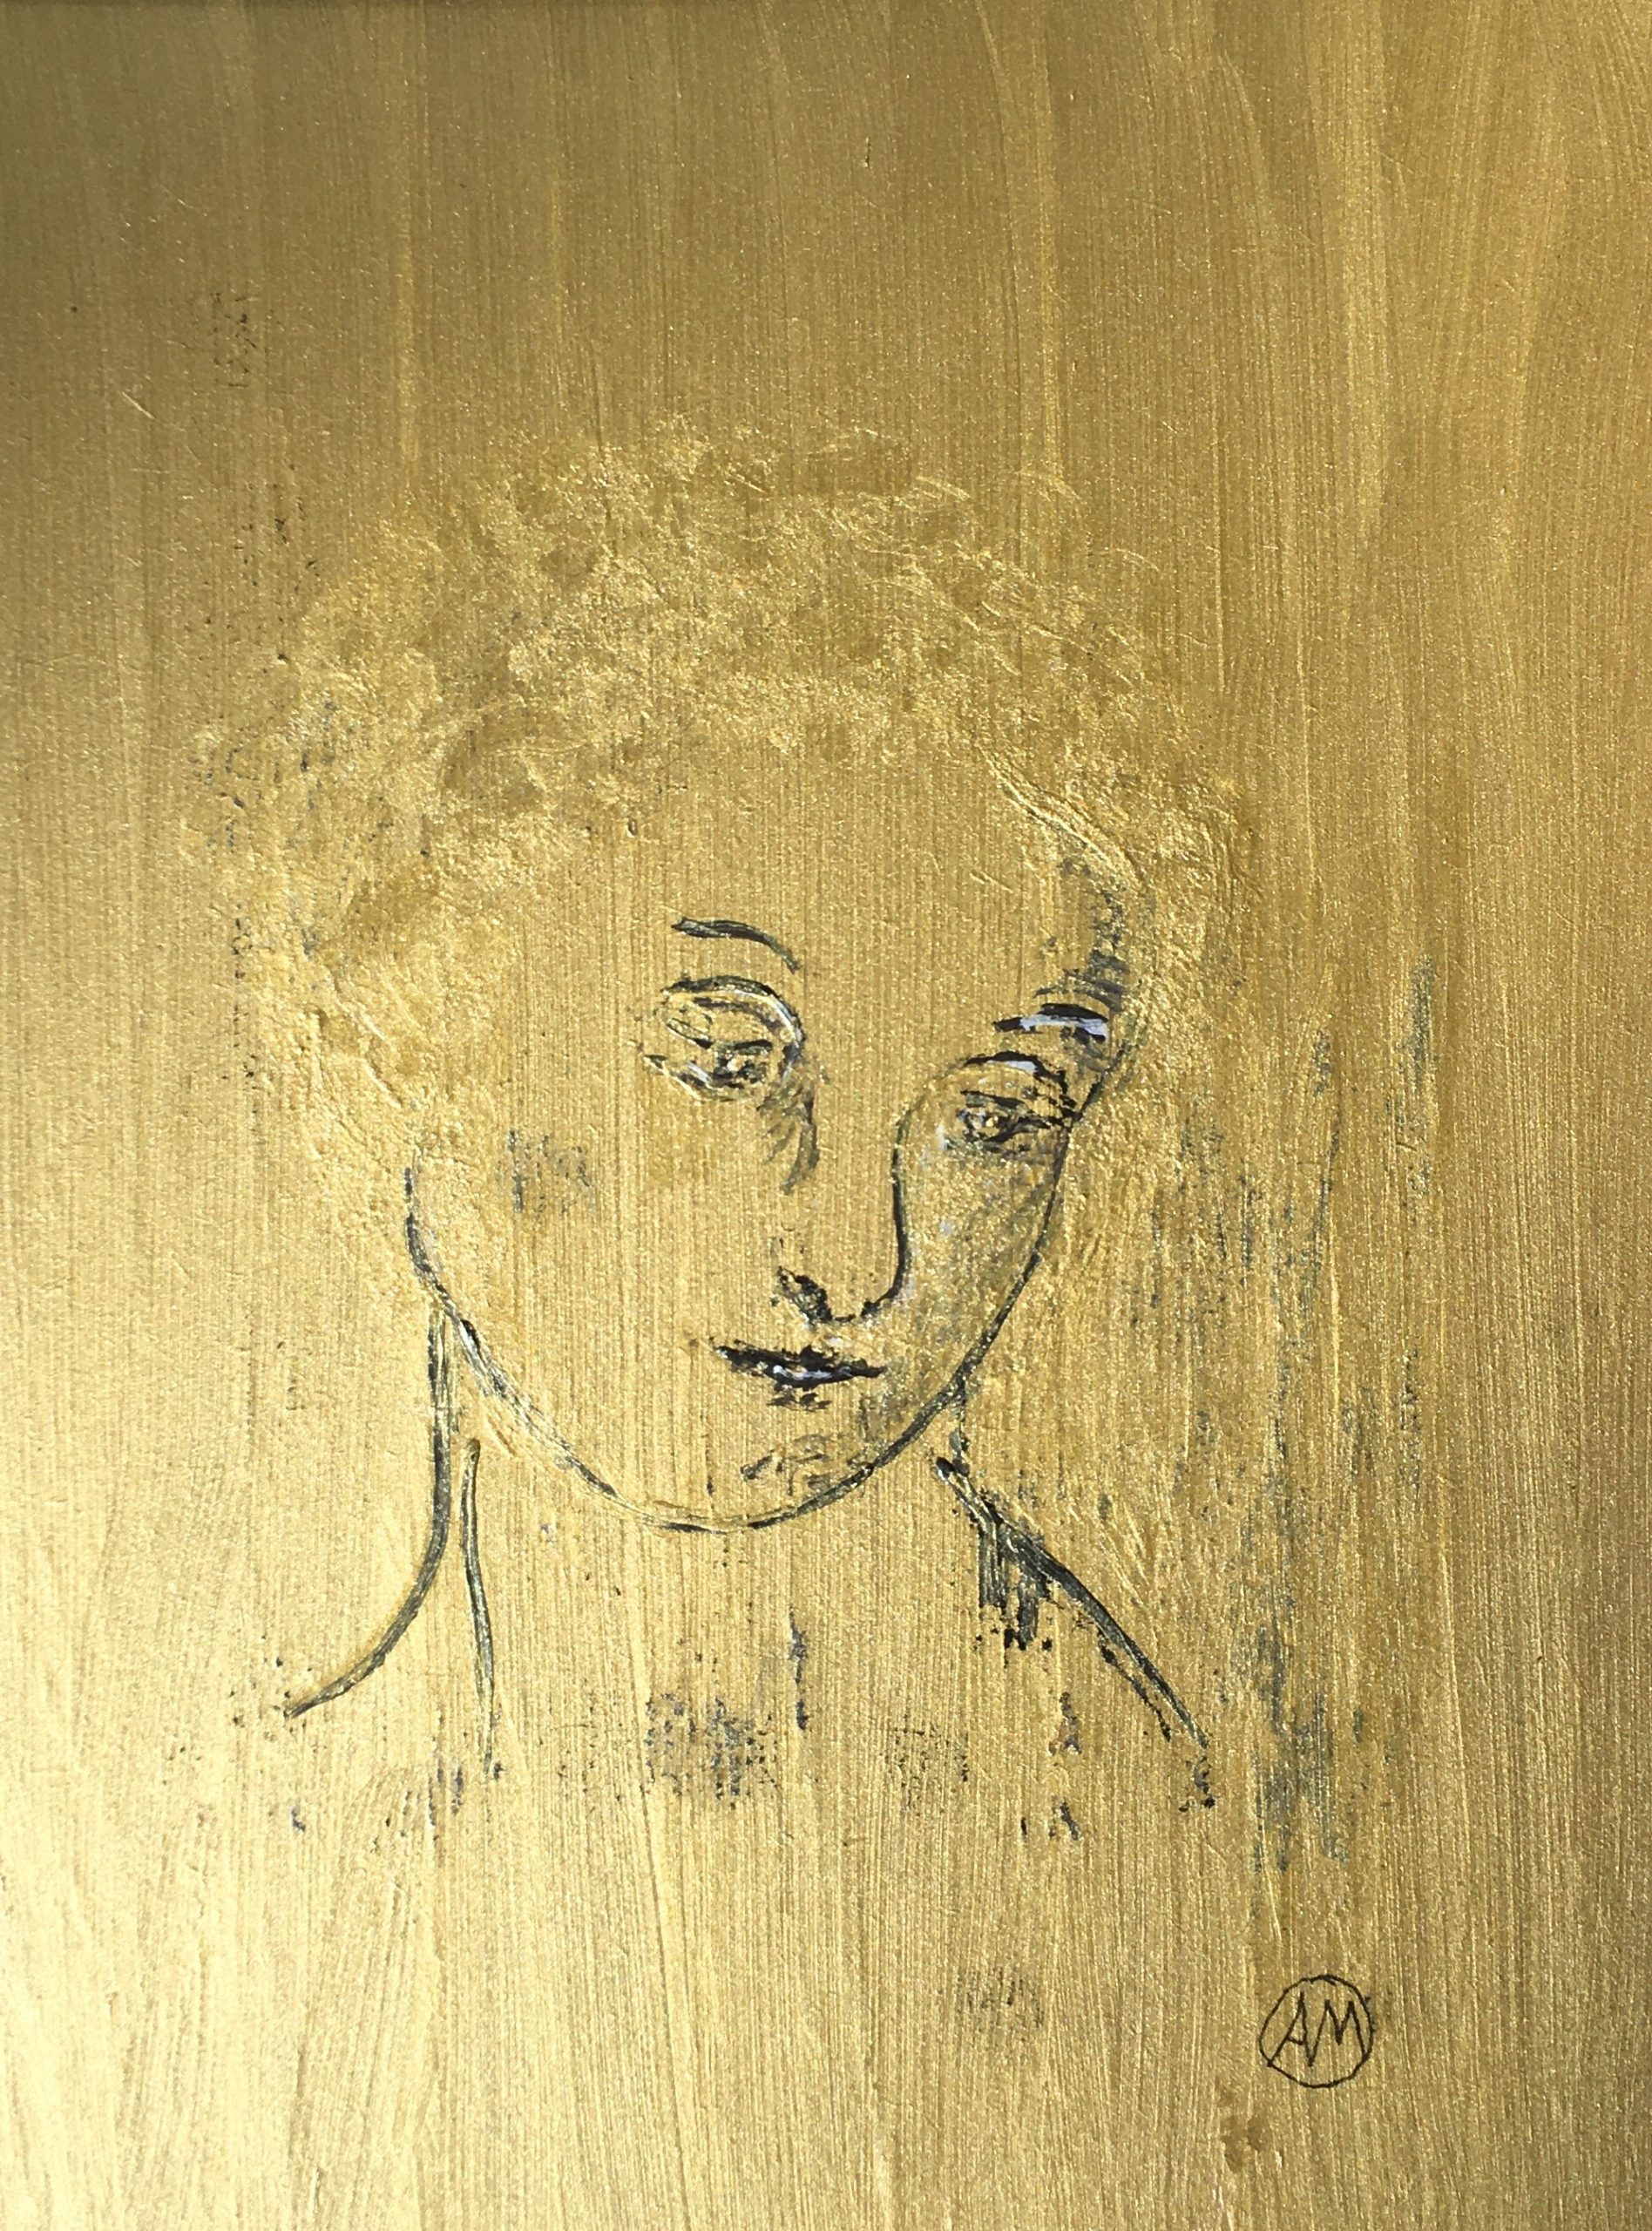 La Madonne - Gravure poudre d'or sur papier - Dessin d'Aldo MUGNIER